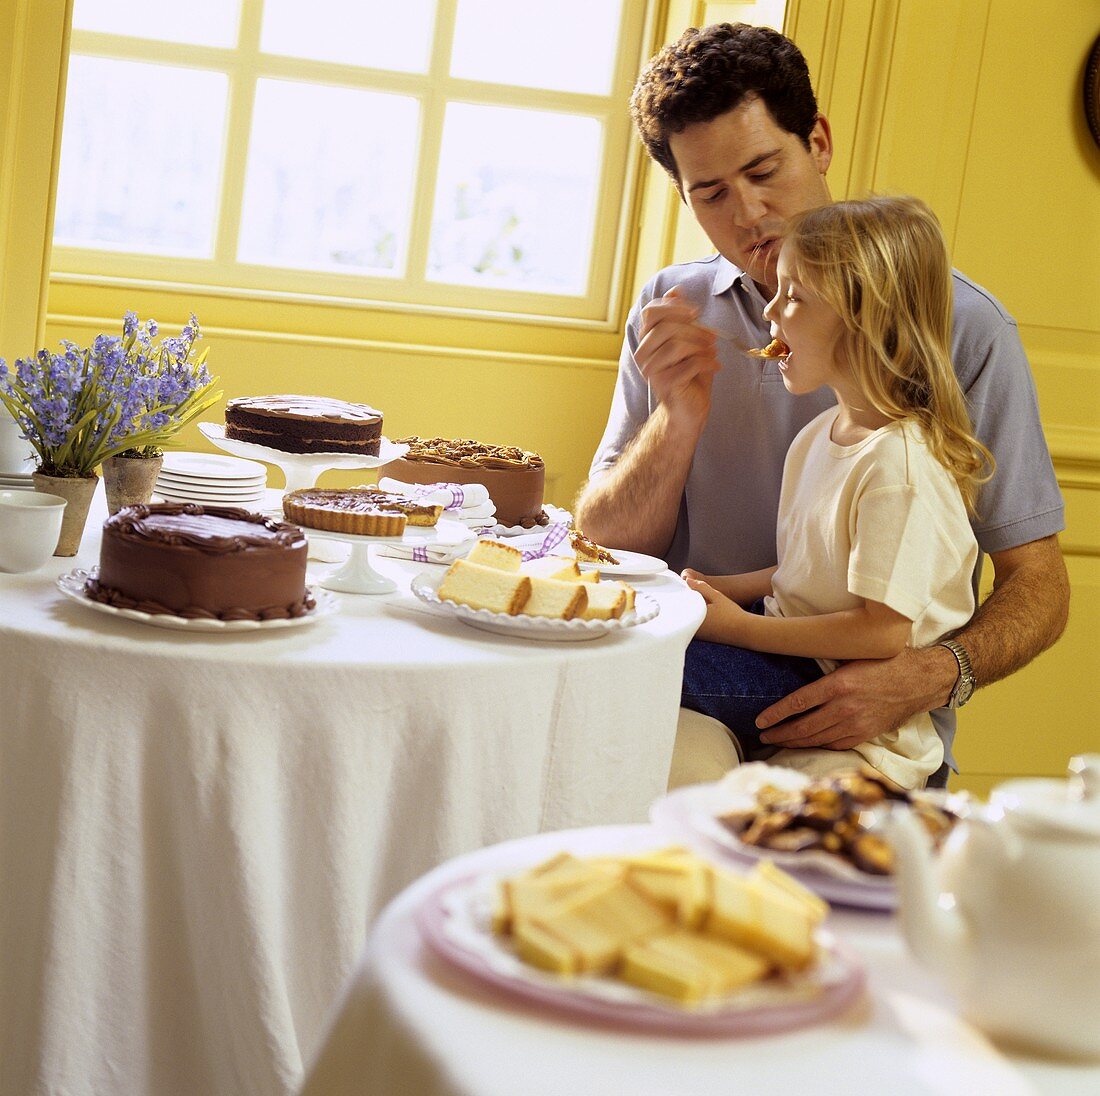 Vater und Tochter essend am Kuchenbuffet